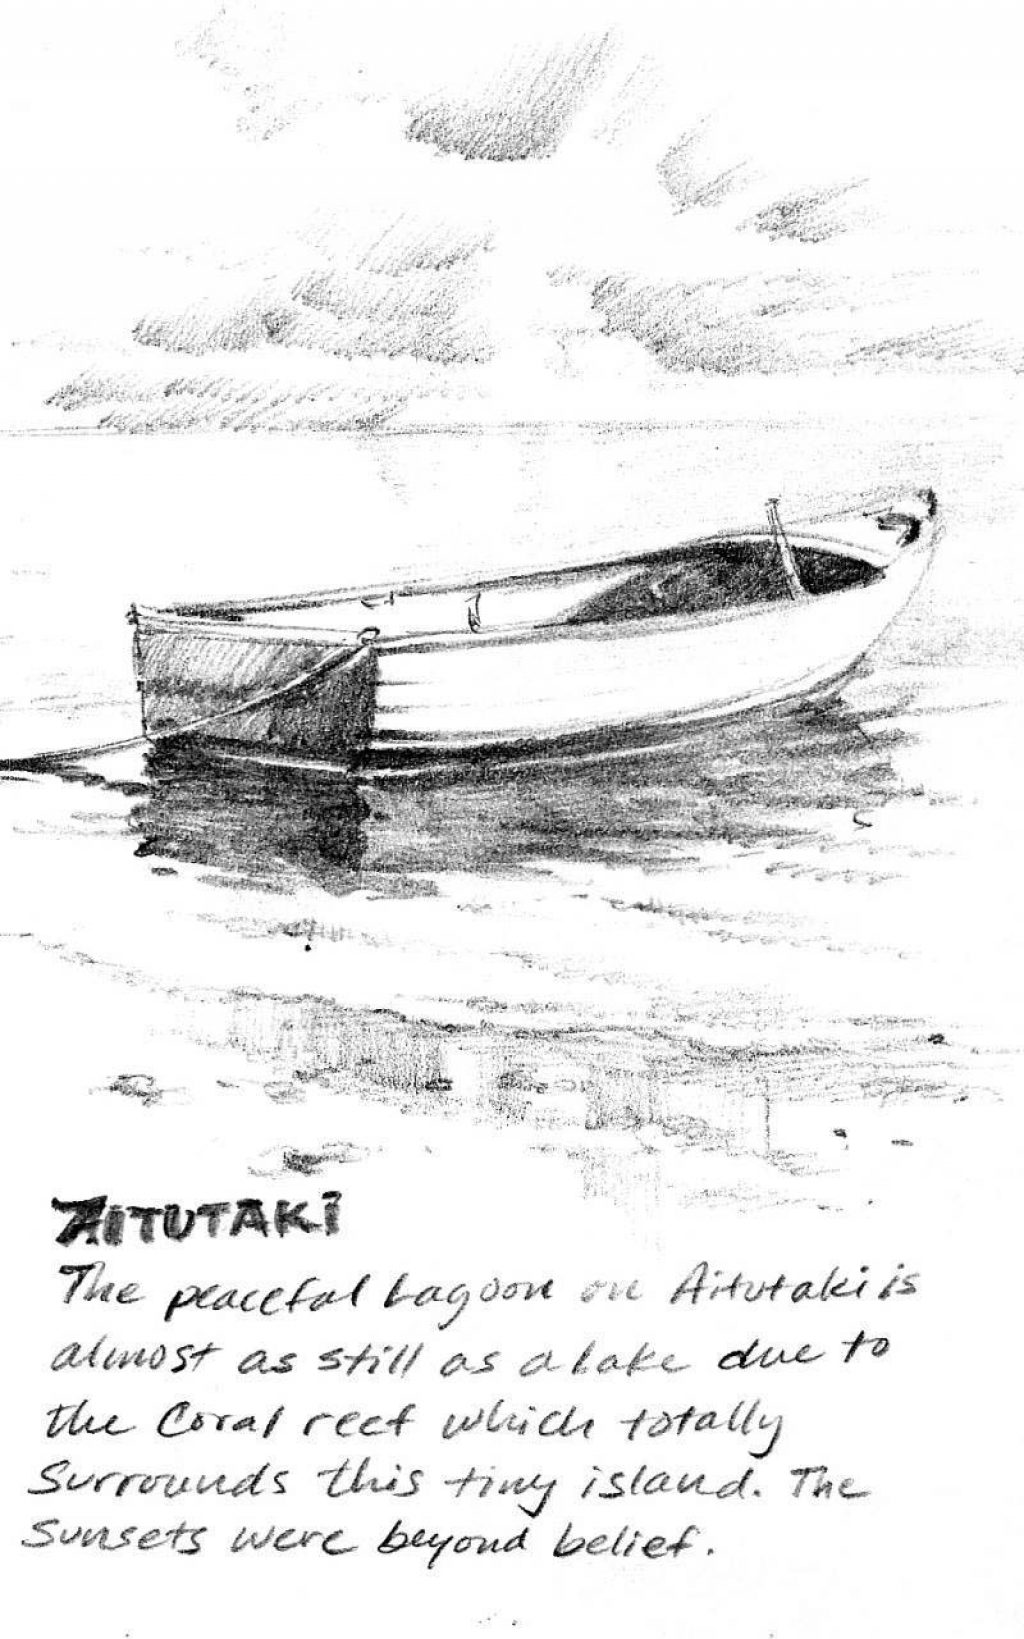 Sketch book pencil drawing of Aitutaki